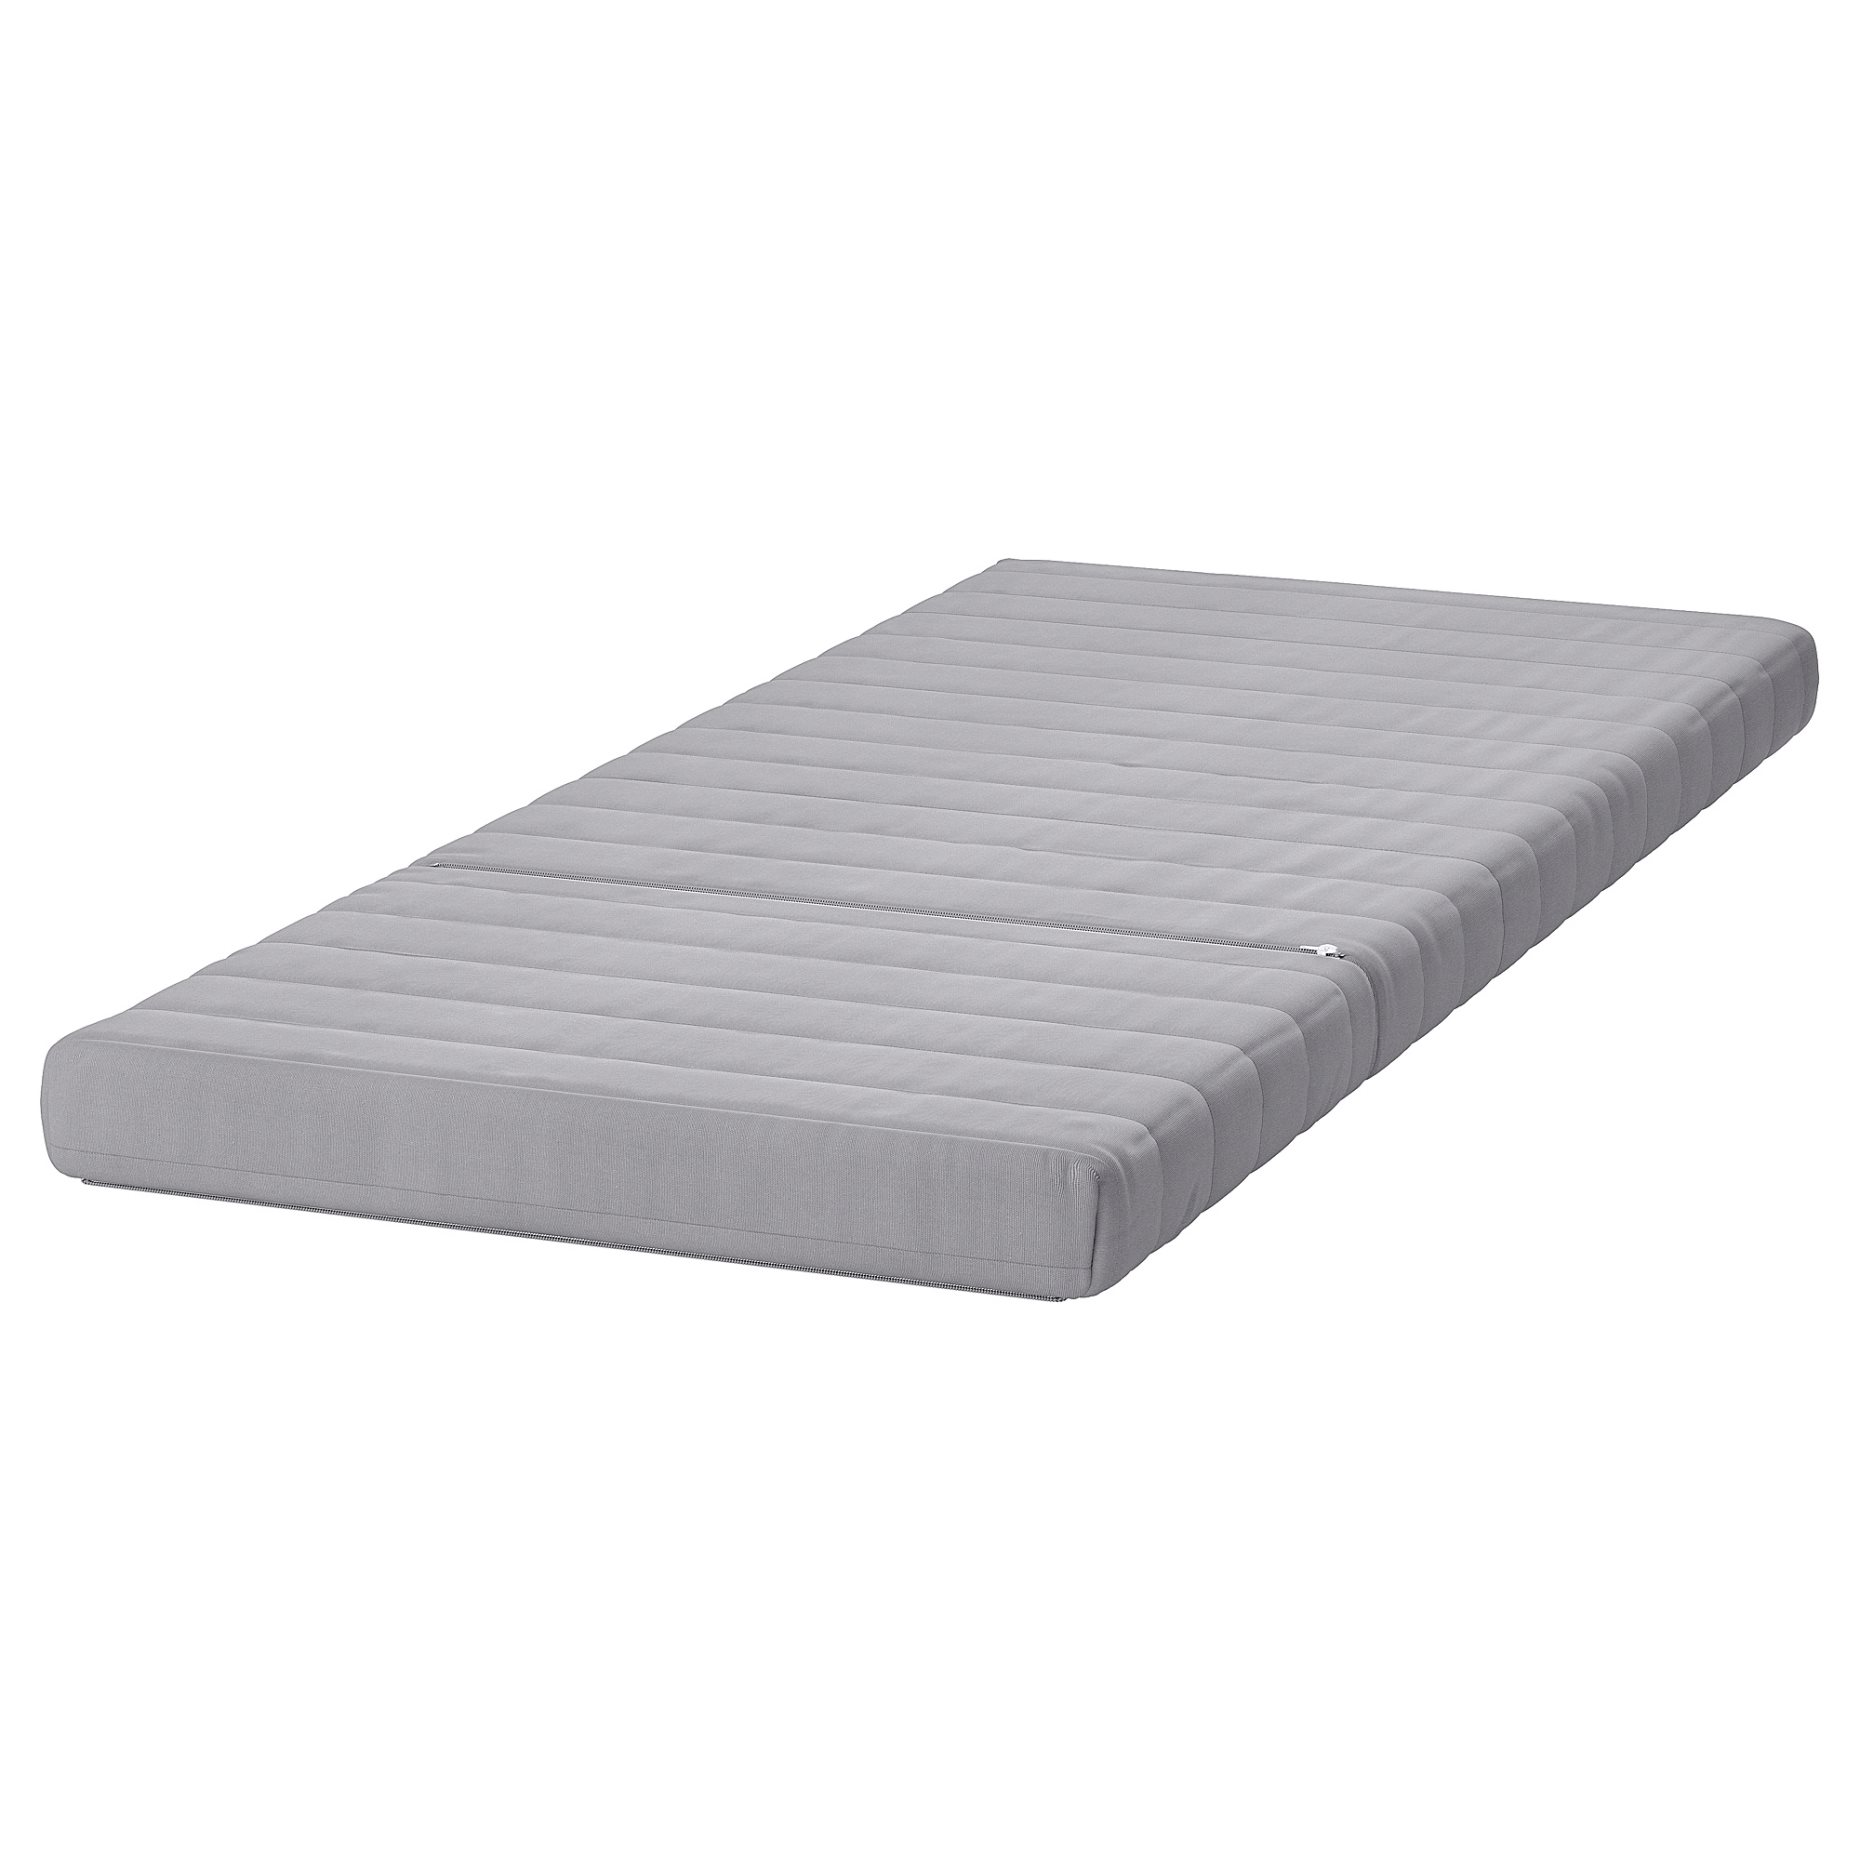 LYCKSELE MURBO, mattress, 301.020.78